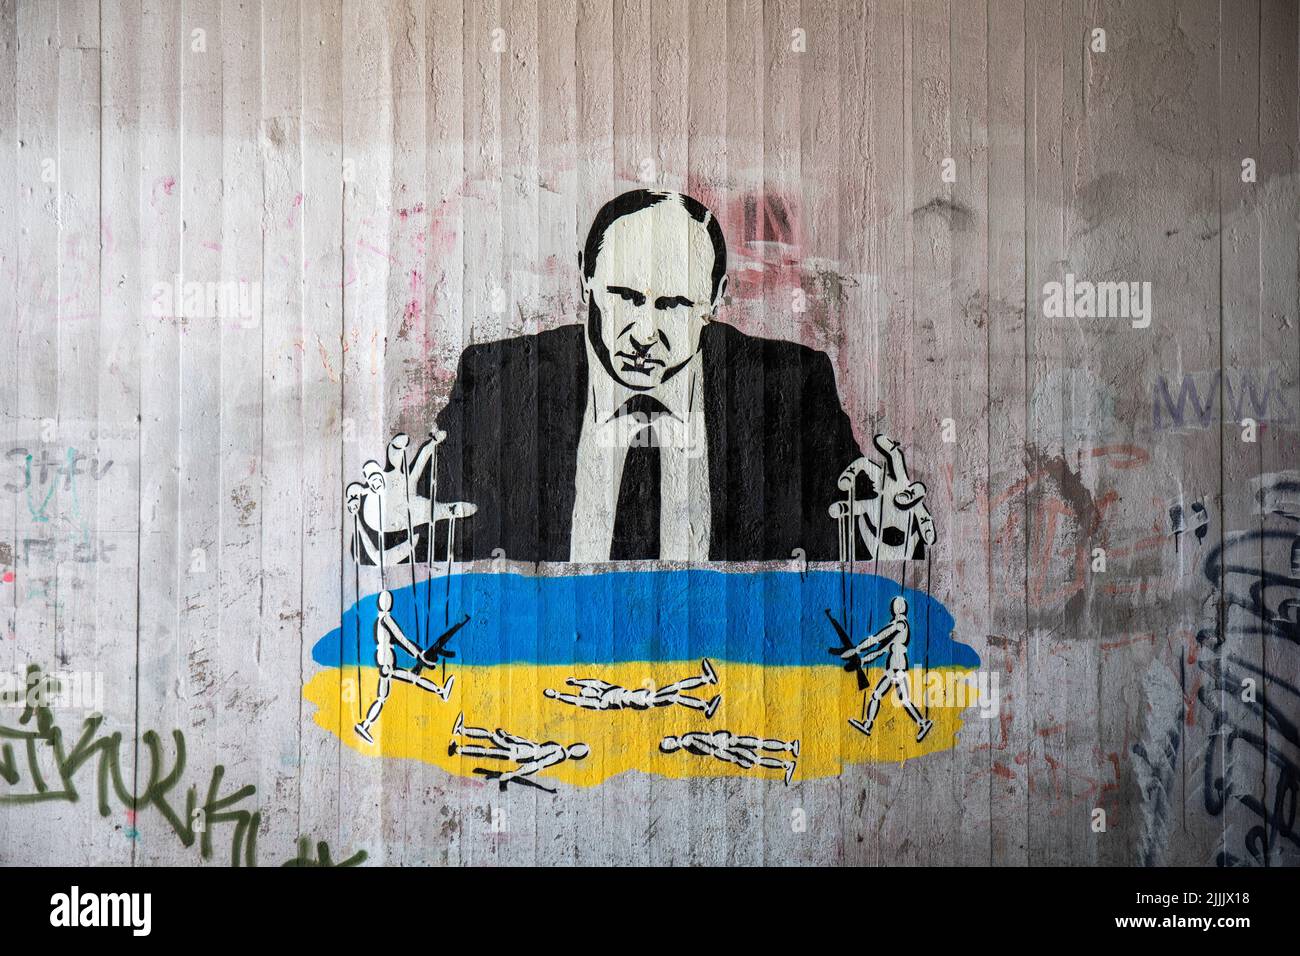 Straßenkunst nur für redaktionelle Zwecke. Wandgraffiti oder Stencil-Graffiti von Putin als Puppenspieler von Plan B. Helsinki, Finnland. Stockfoto